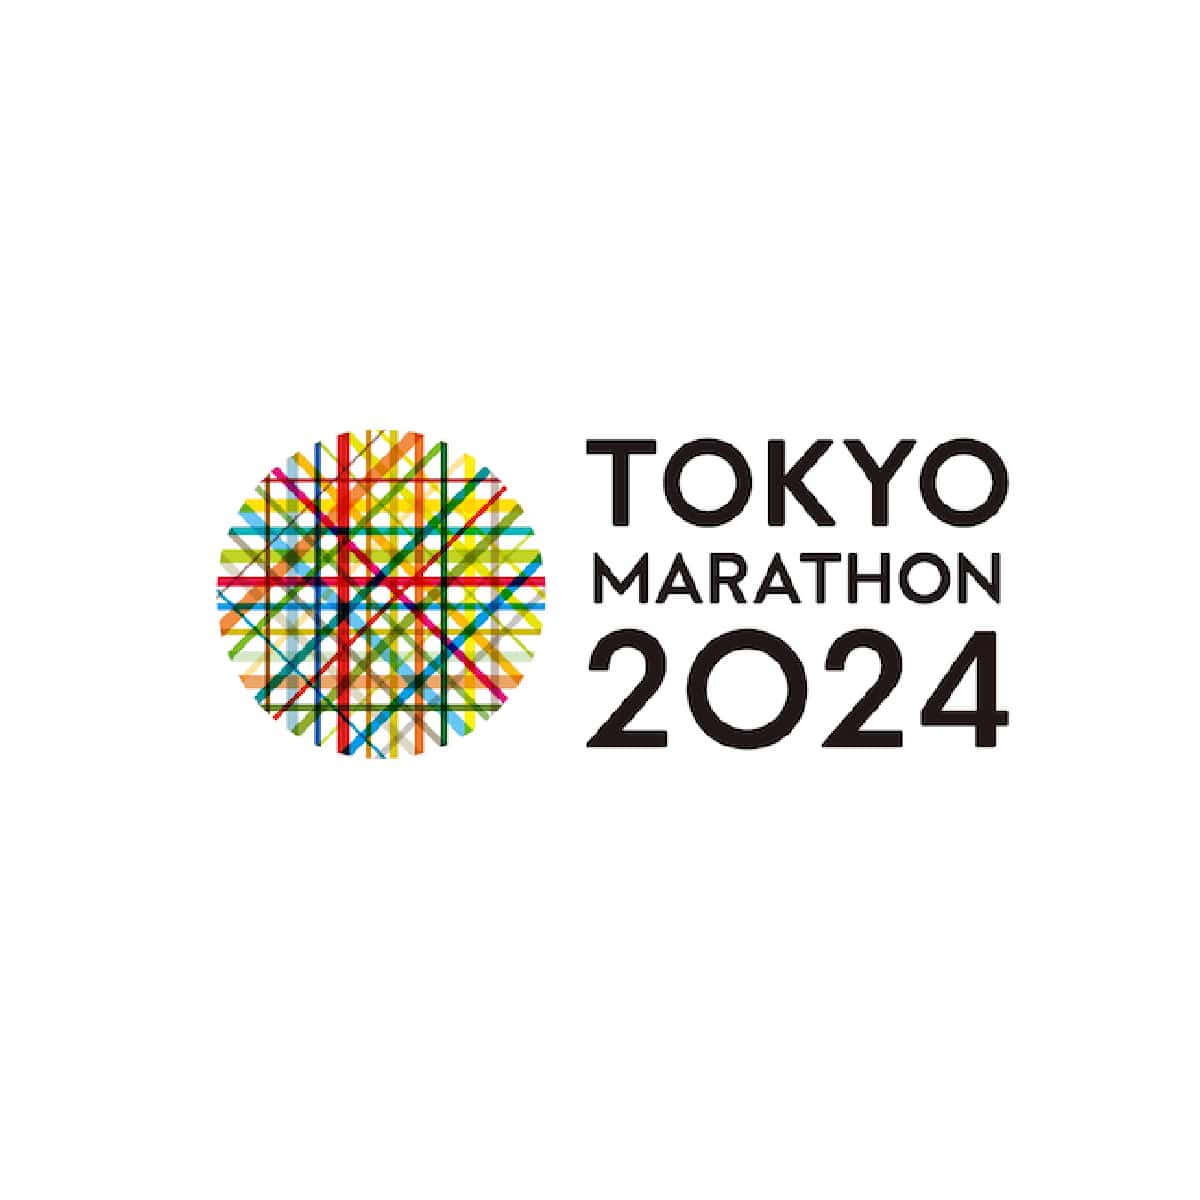 Schedule TOKYO MARATHON 2024